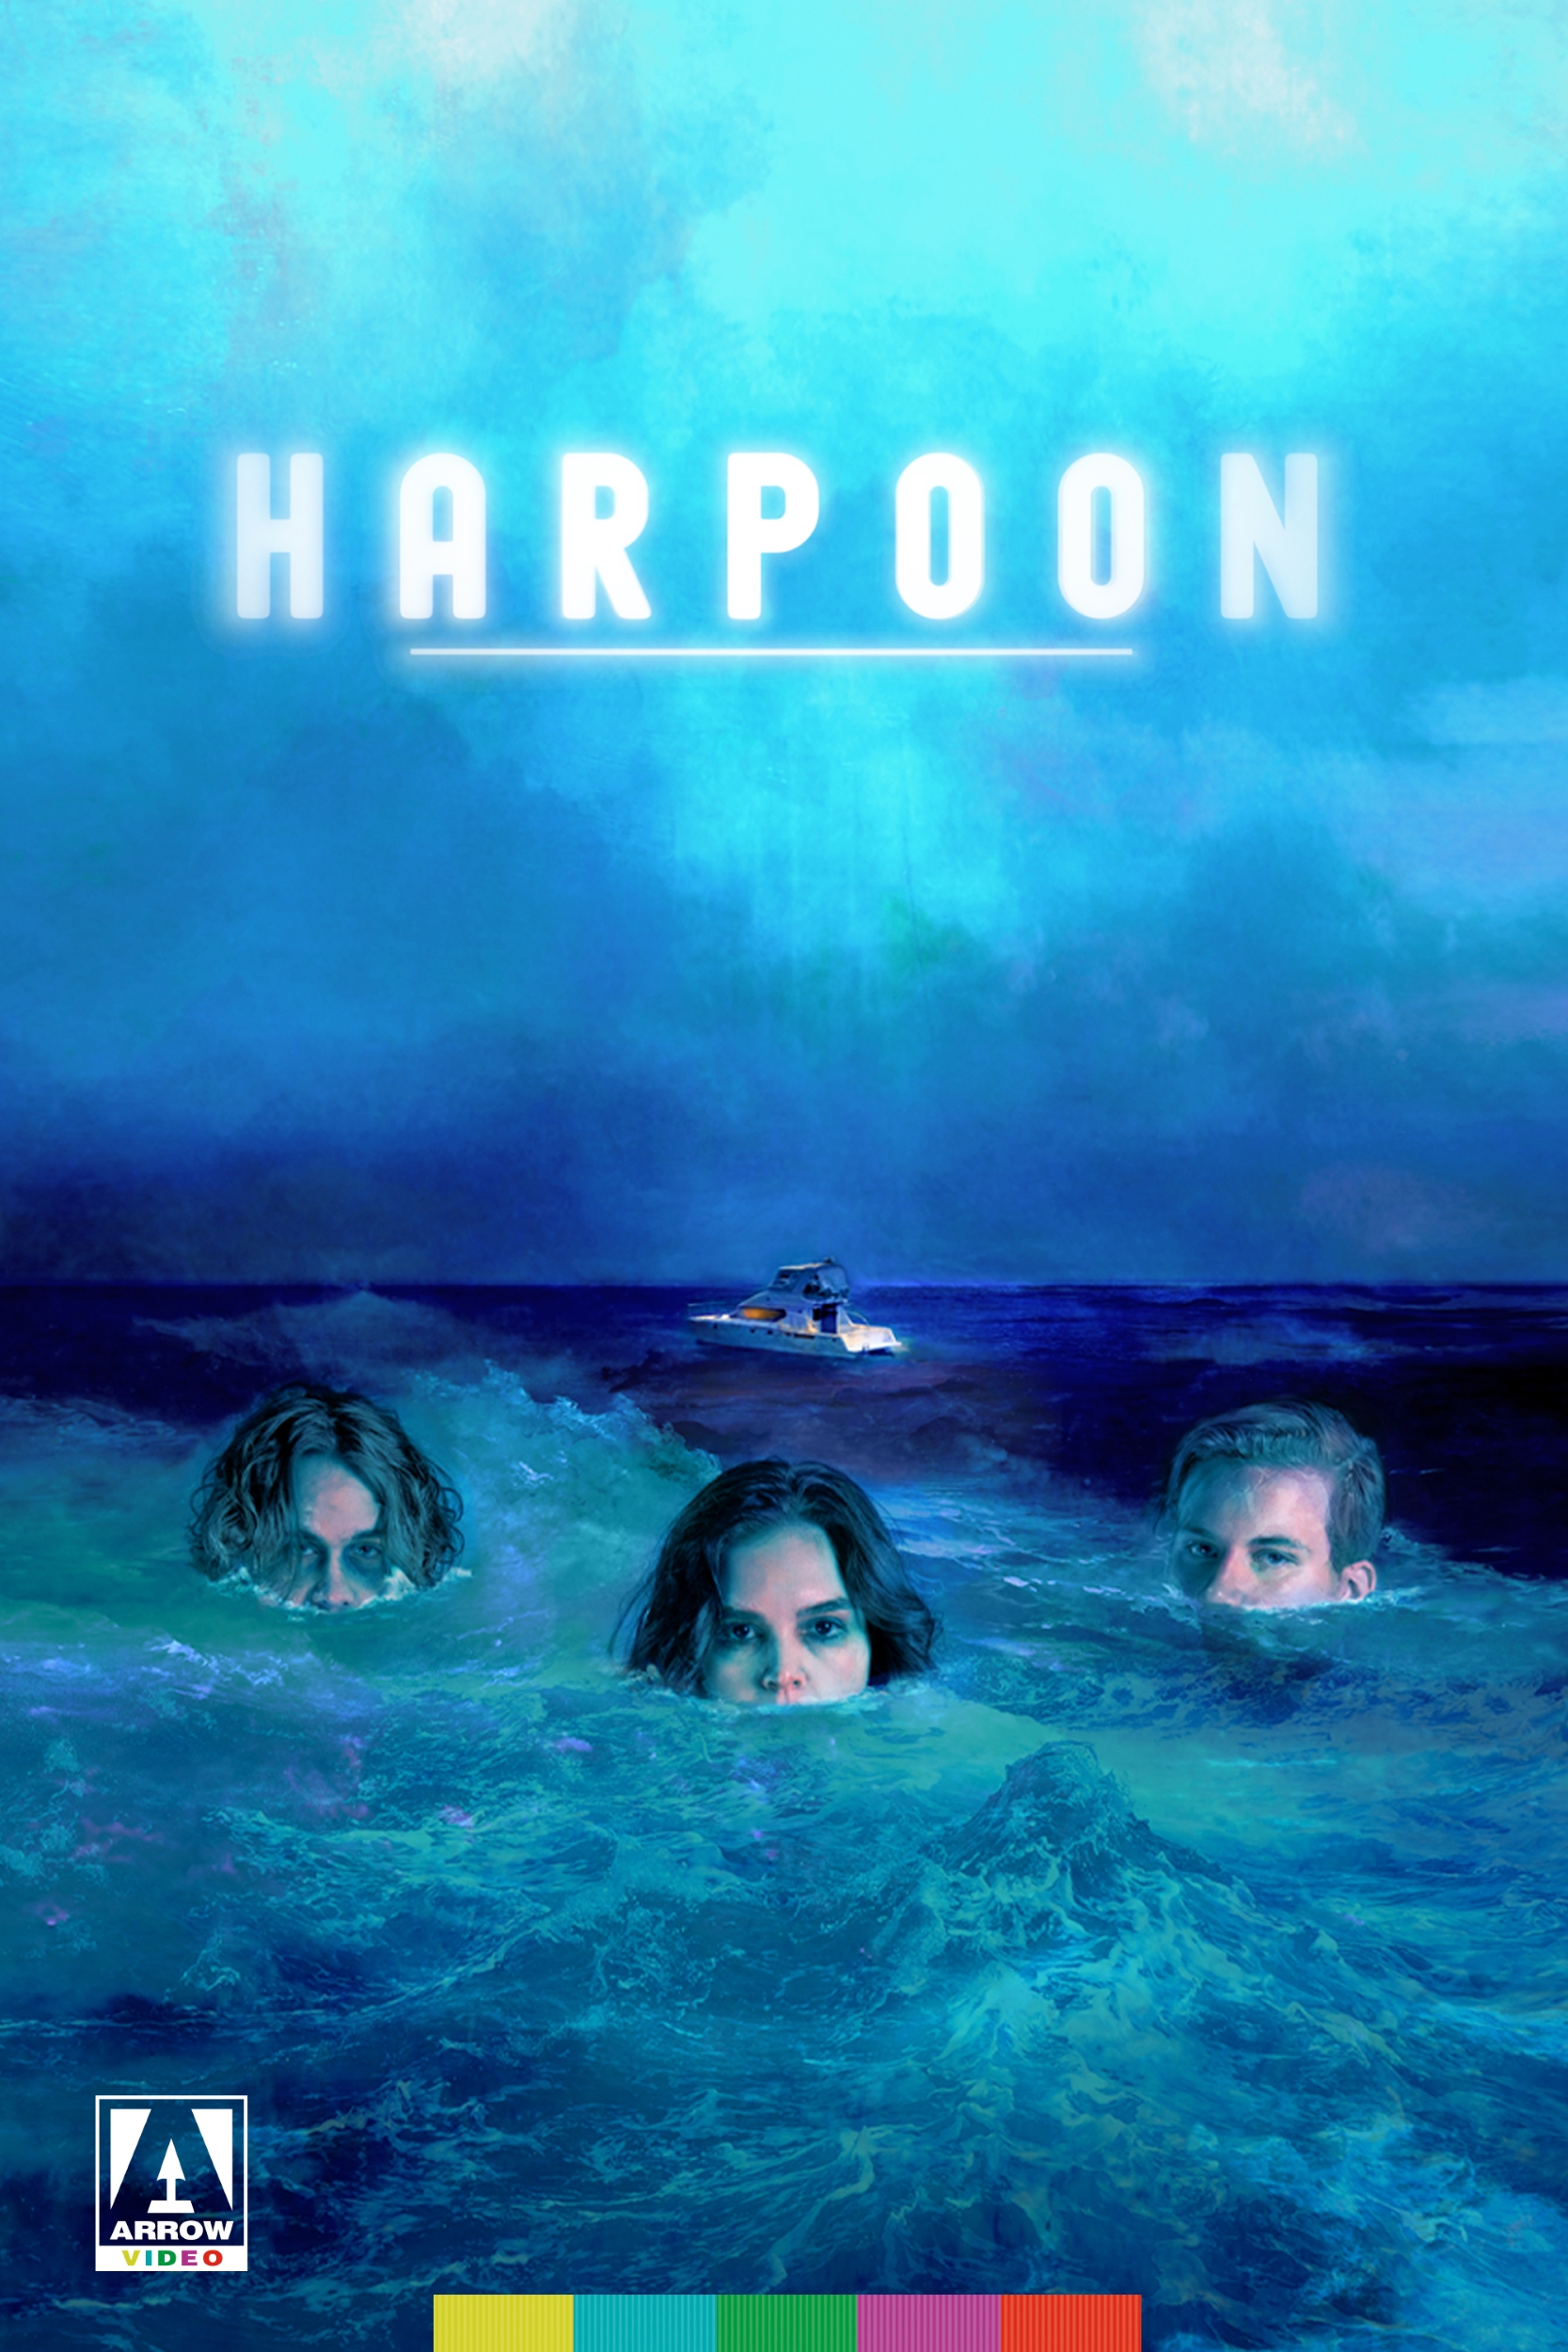 Hit Horror 'Harpoon' se estrena exclusivamente en el canal de videos Arrow